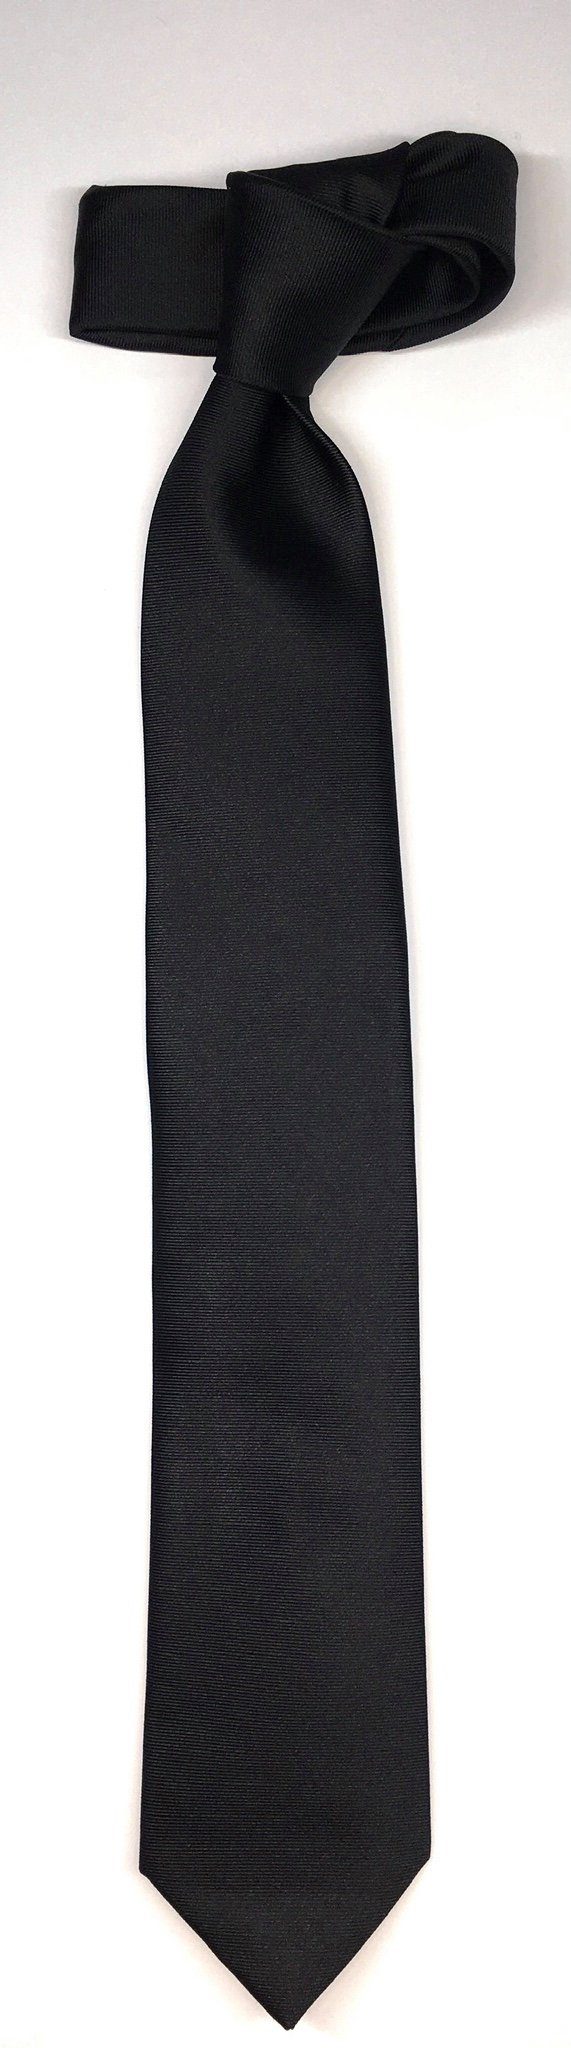 Seidenfalter Krawatte Krawatte Schwarz 6cm Seidenfalter Uni